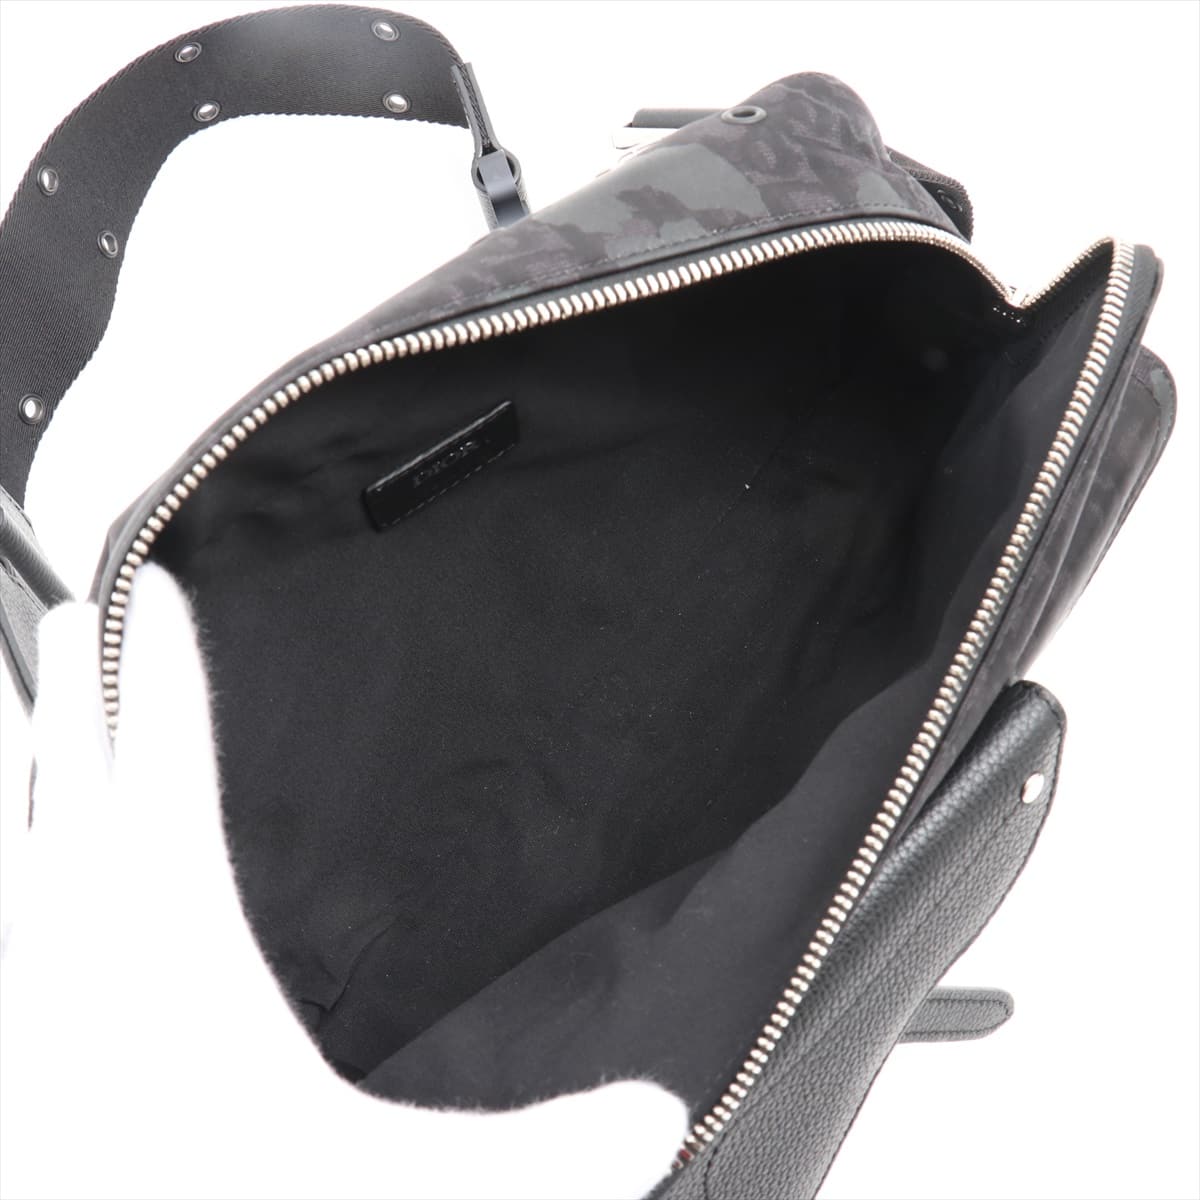 Christian Dior Trotter Saddle Canvas & leather Sling backpack Black